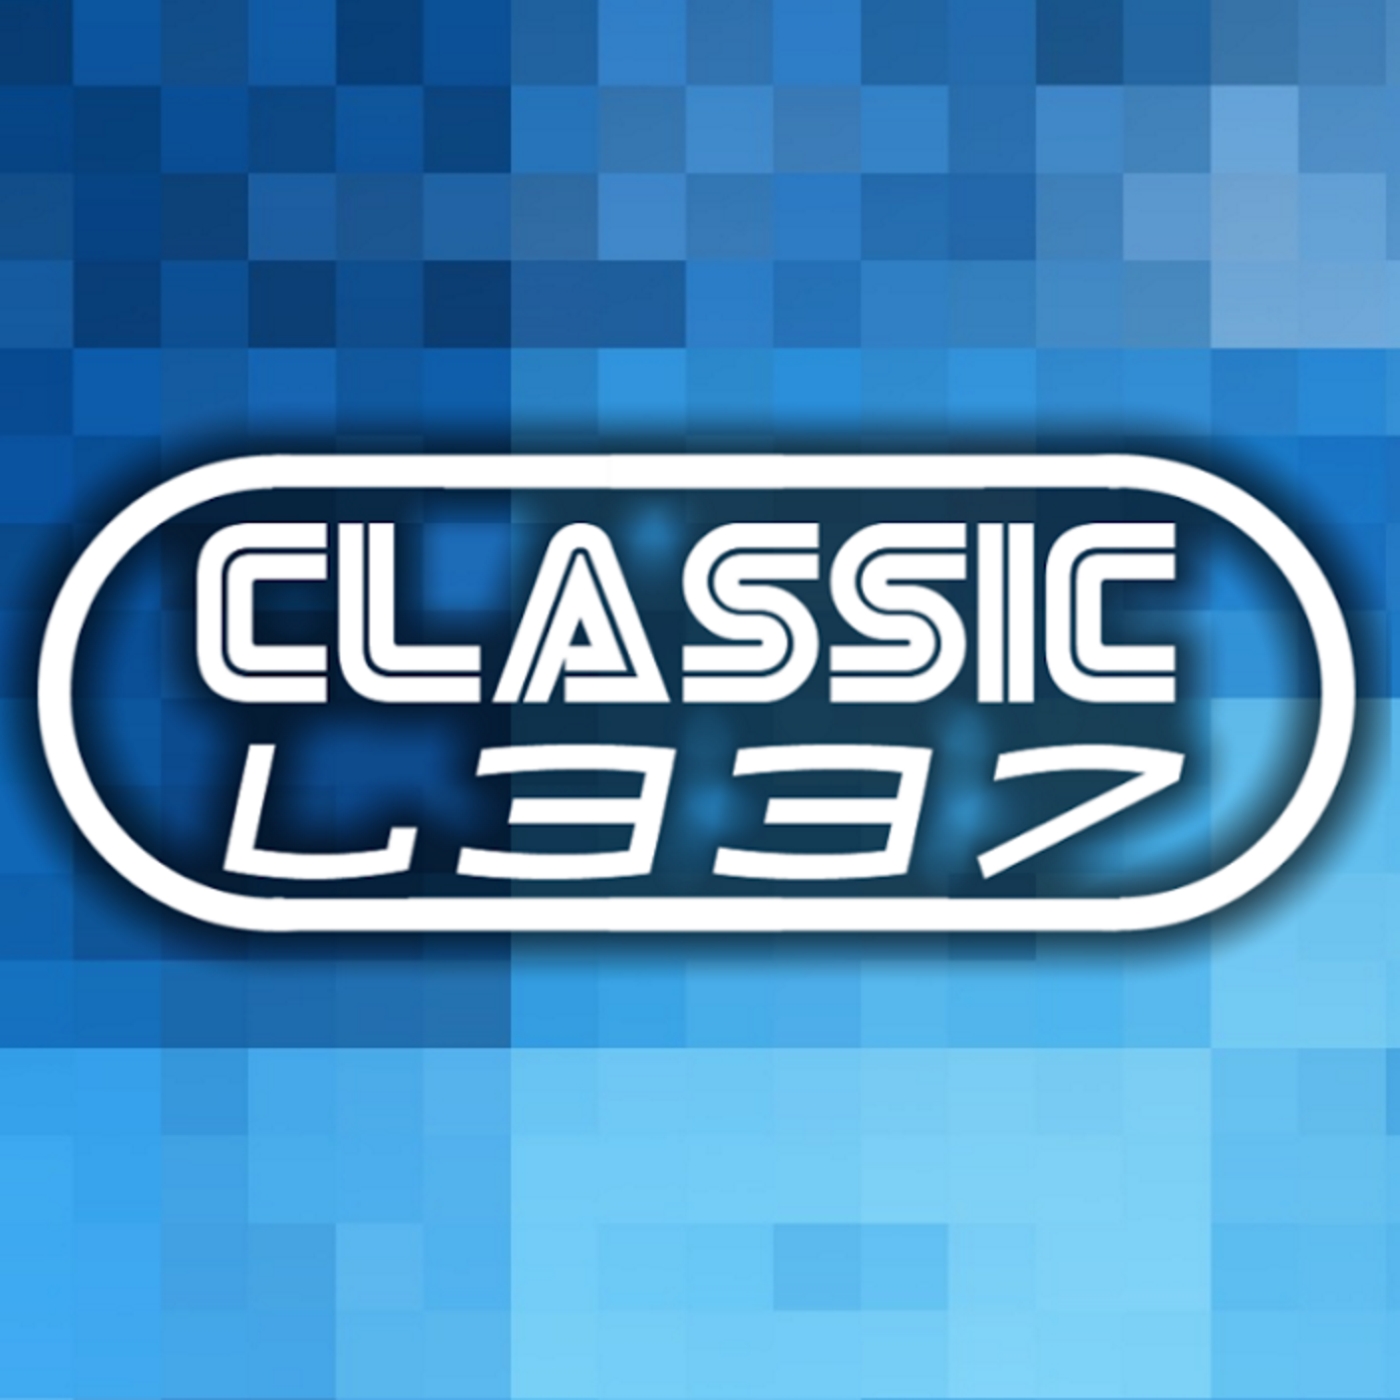 Classic L337